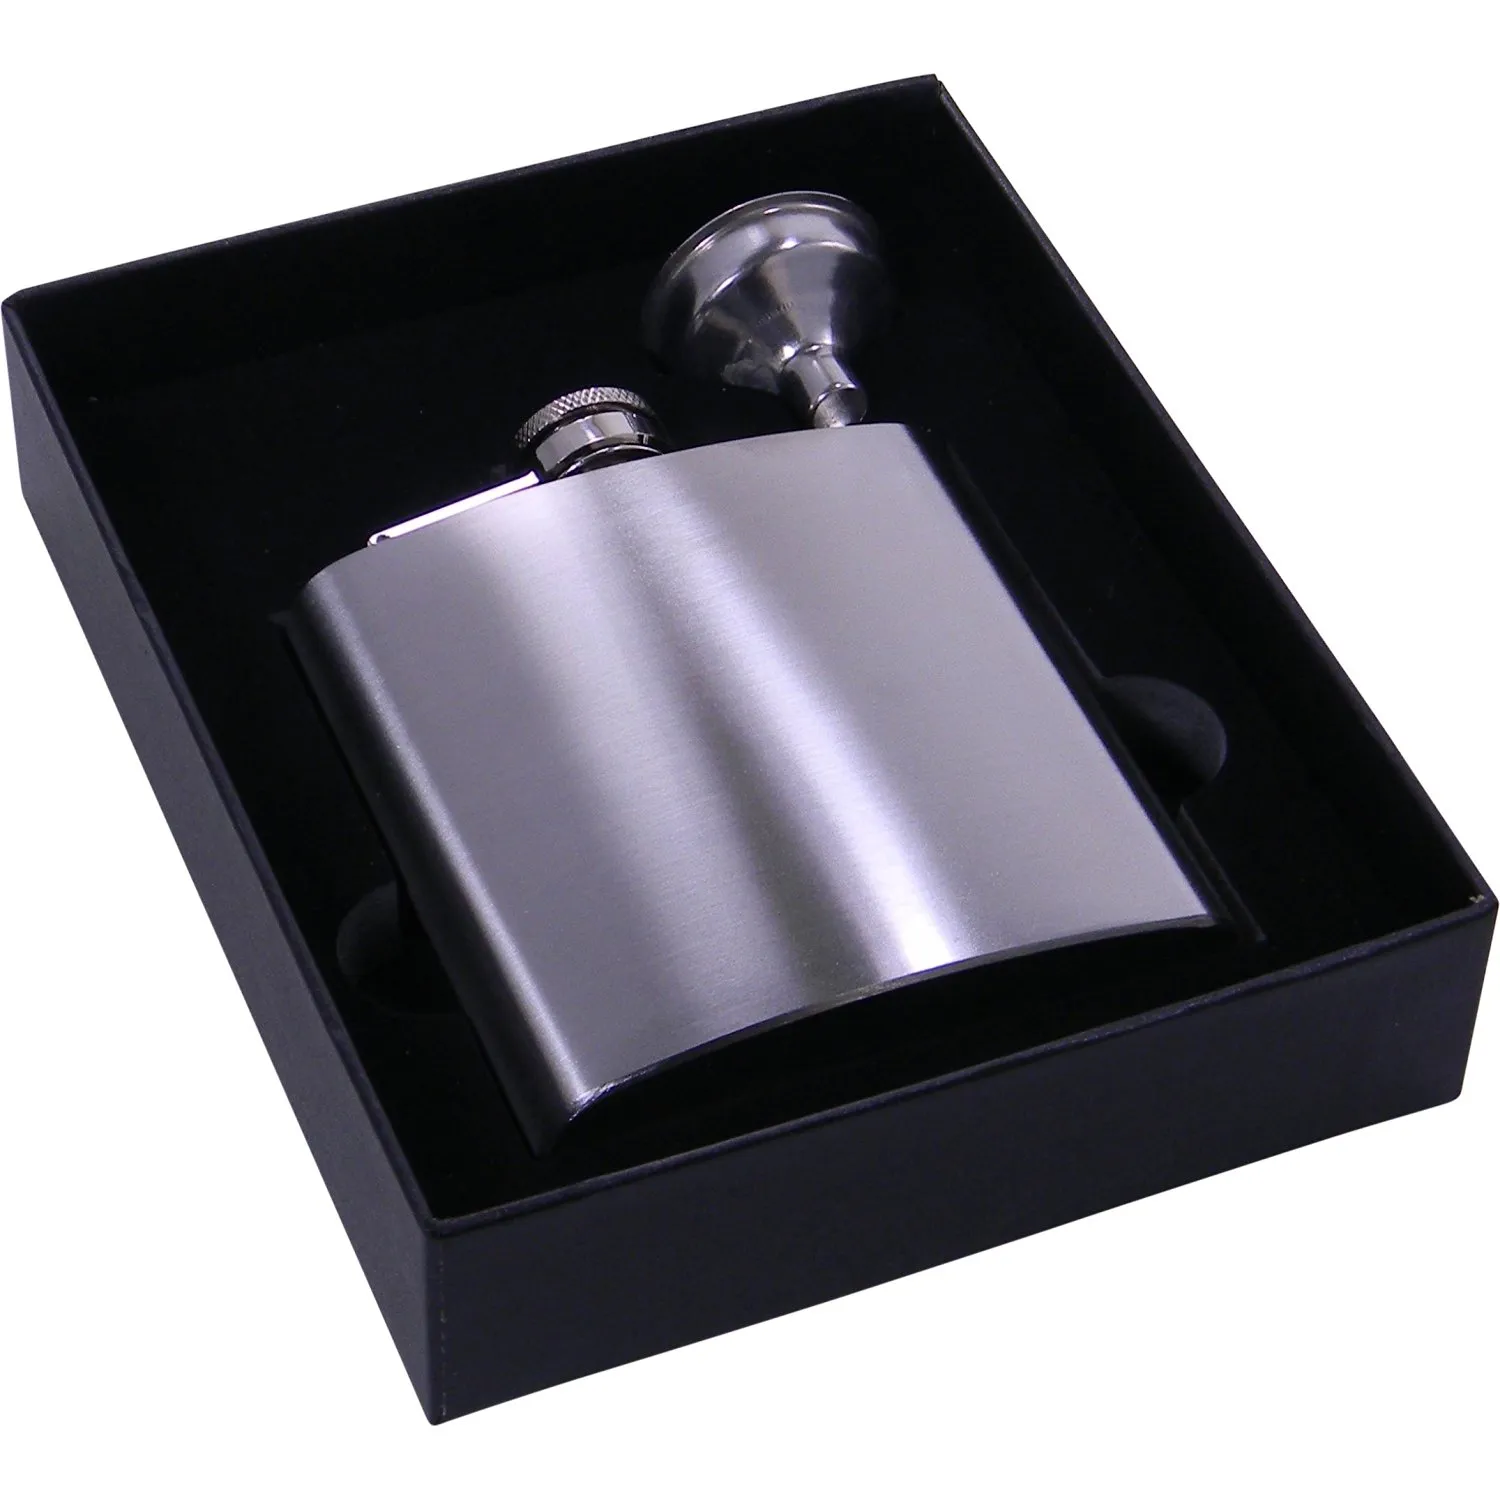 Flacon de hanche en acier inoxydable argenté de 6 oz dans un emballage de boîte-cadeau noir, intérieur en mousse